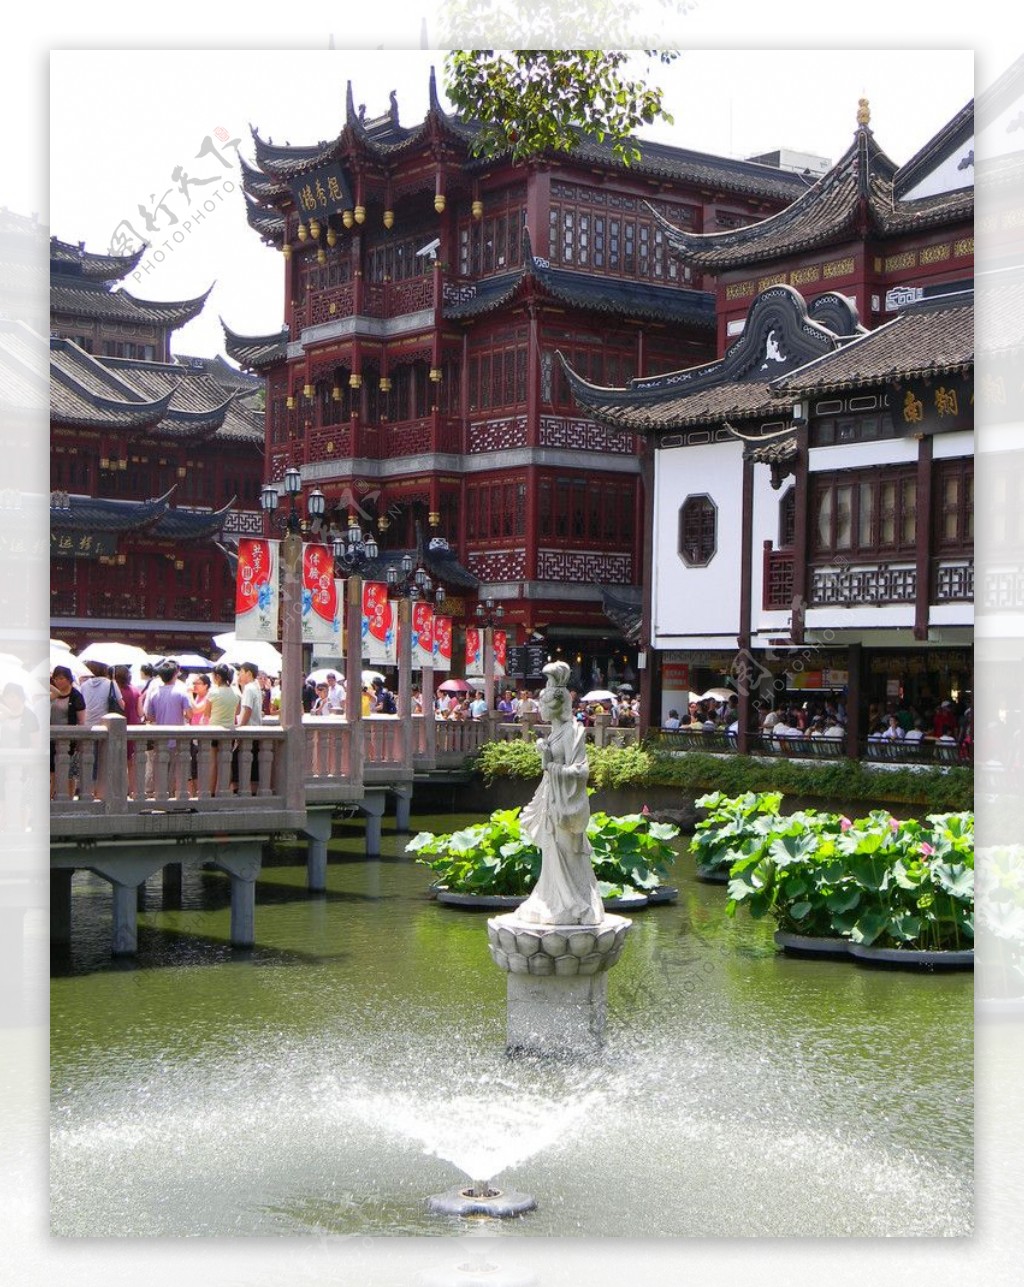 上海城隍庙九曲桥喷水池一景图片